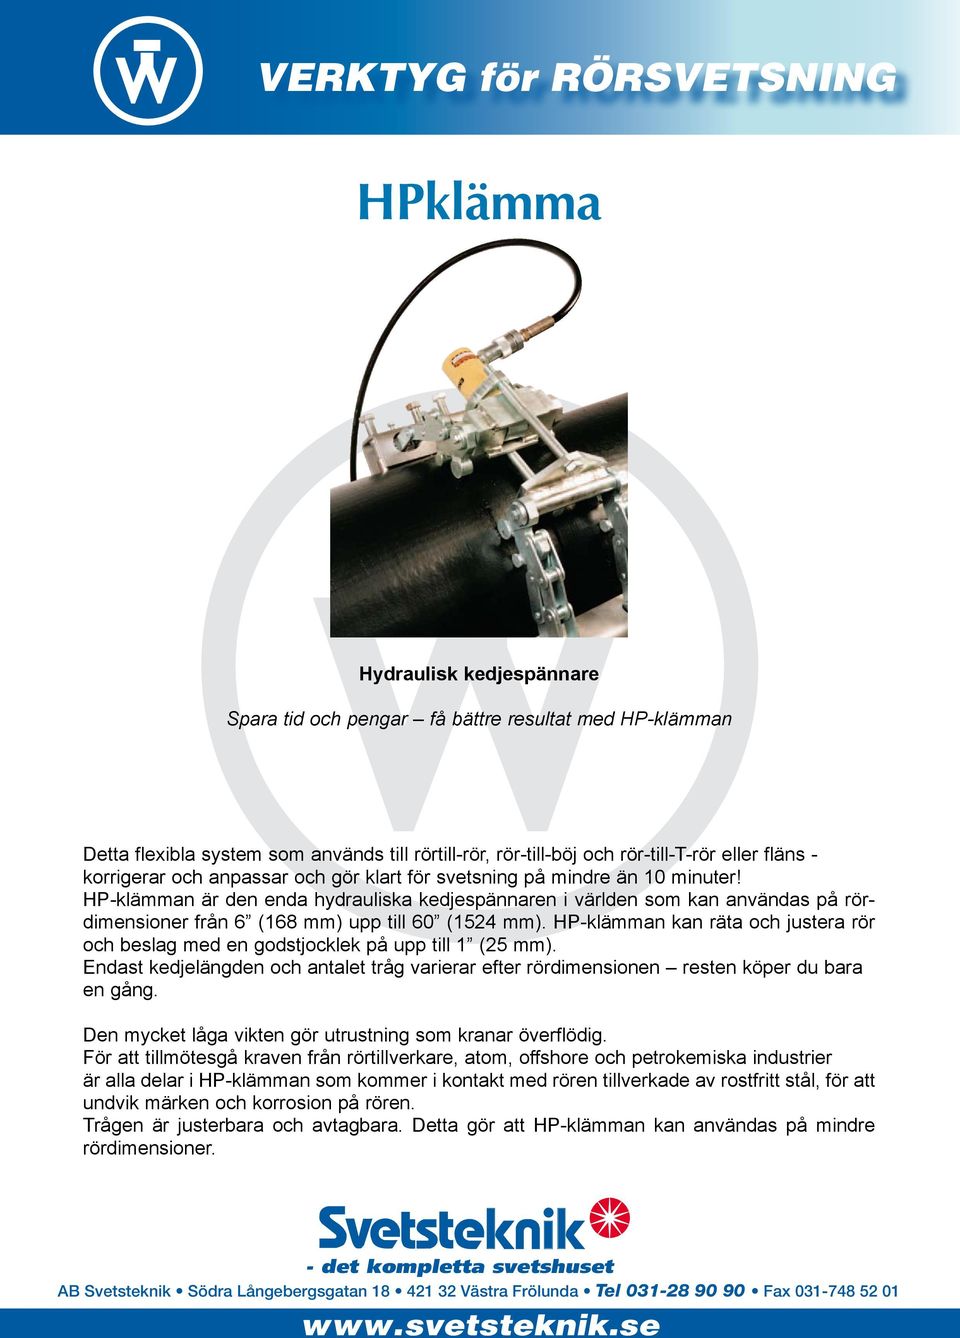 HP-klämman är den enda hydrauliska kedjespännaren i världen som kan användas på rördimensioner från 6 (168 mm) upp till 60 (1524 mm).